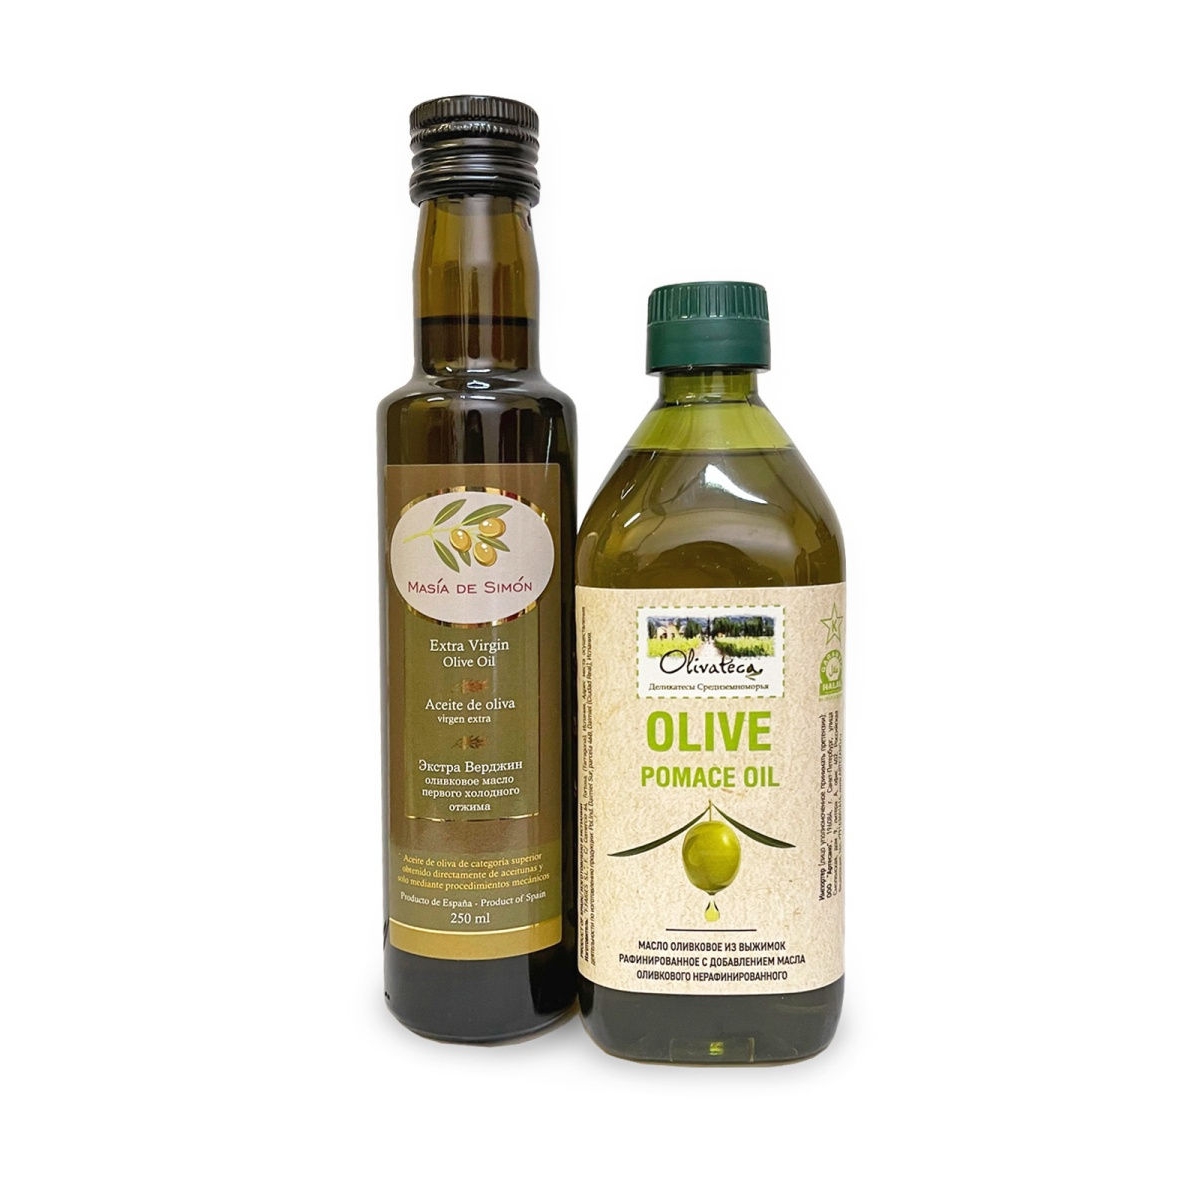 Оливковое масло для салатов нерафинированное. Масло оливковое Экстра Вирджин 250 миллилитров. Масия де Симон масло оливковое. Оливковое масло Olive Pomace. Оливковое масло Olive Pomace Oil.